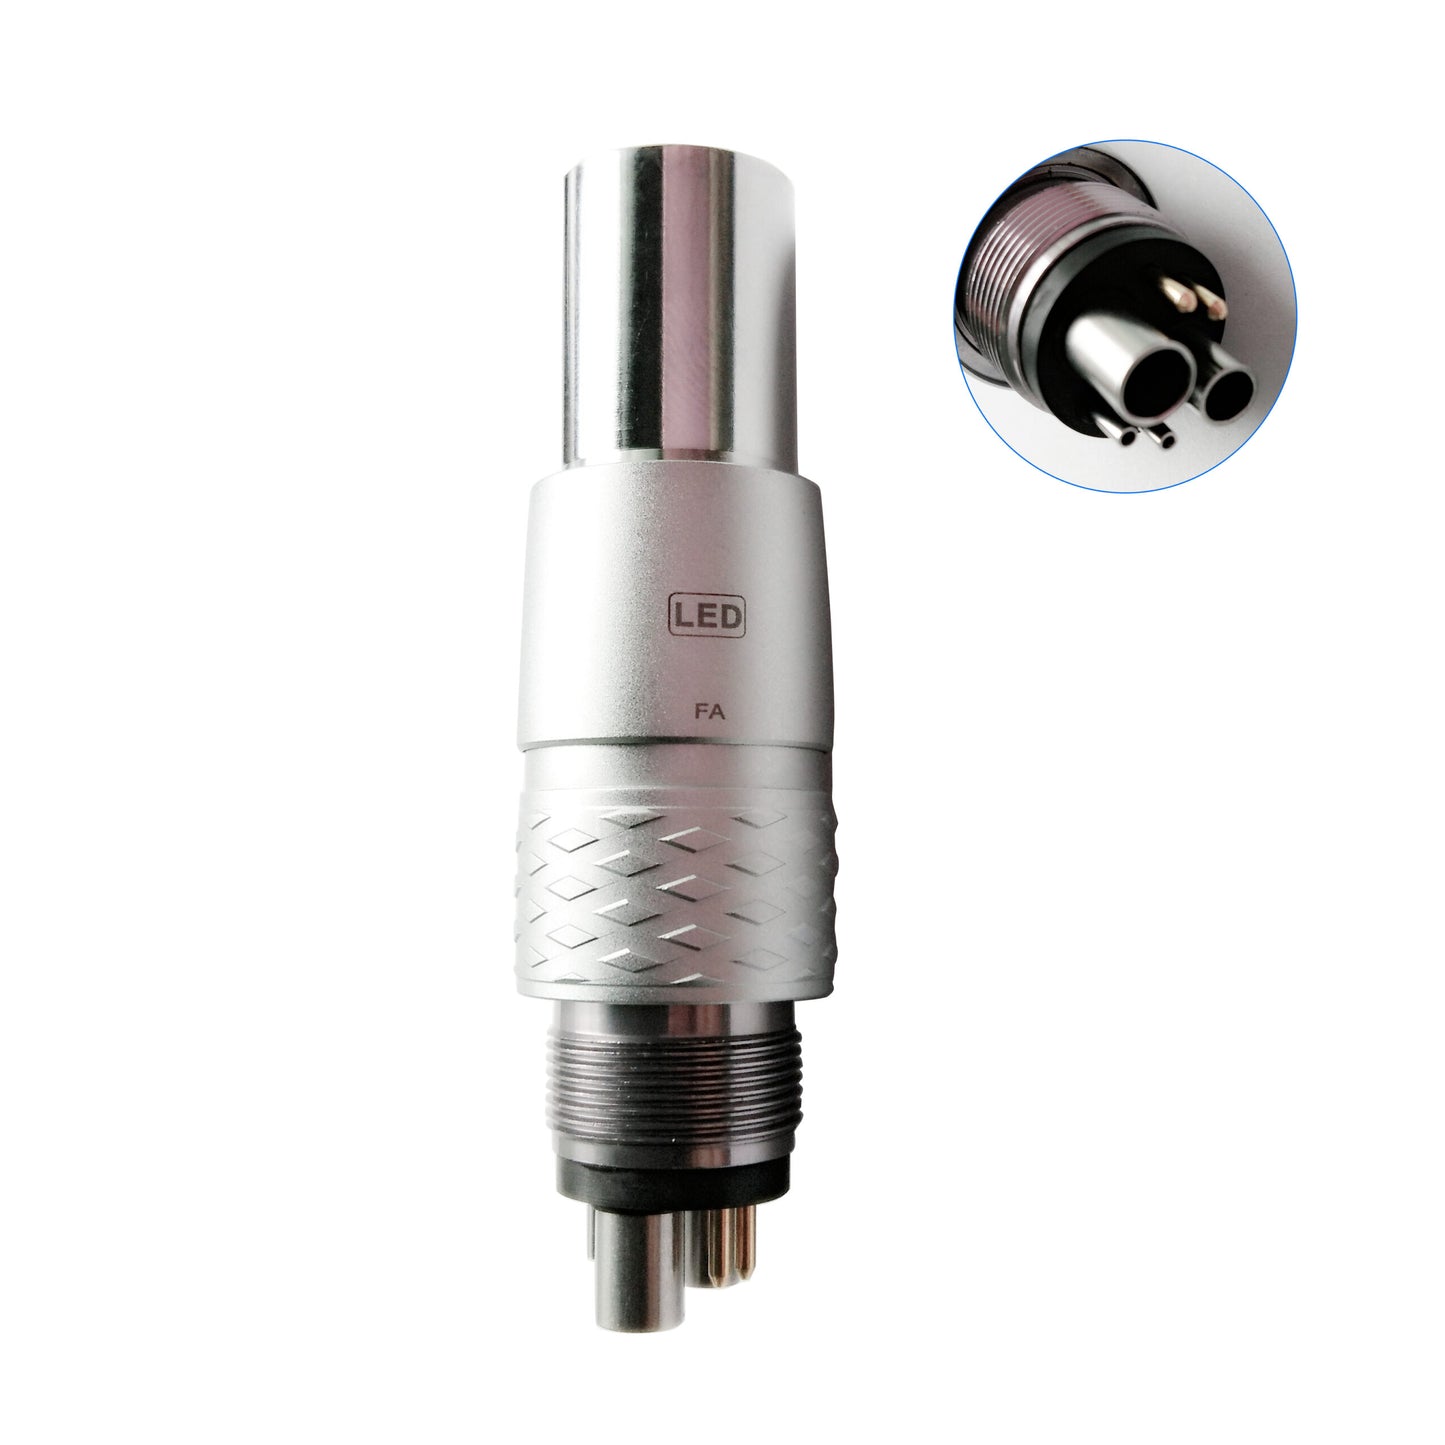 Dental 6H Quick Coupler Coupling NSK fit Fiber Optic LED Handpiece